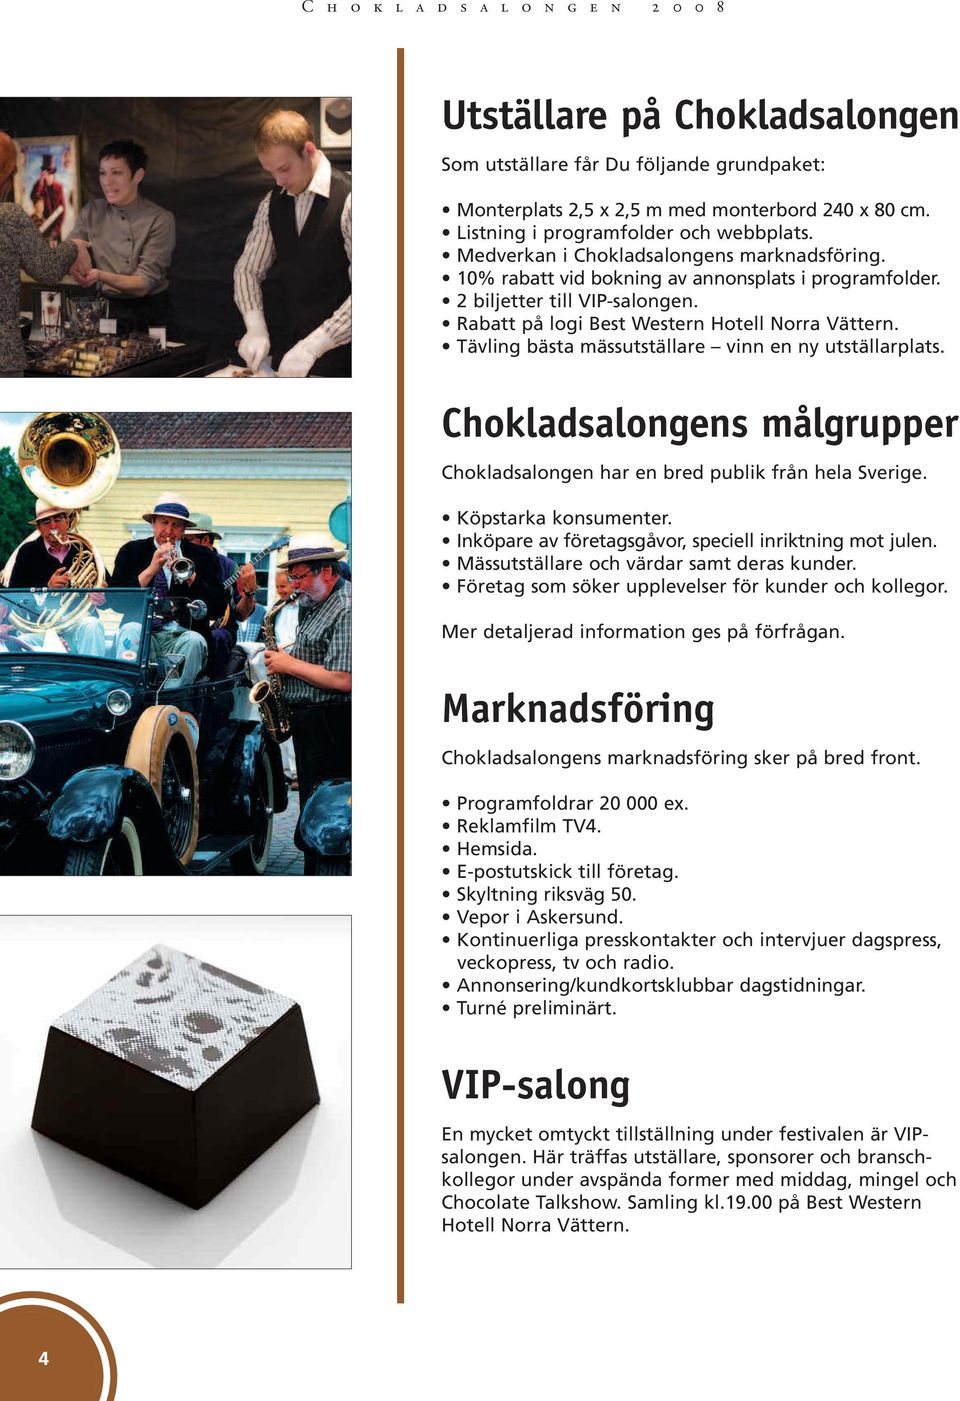 Tävling bästa mässutställare vinn en ny utställarplats. Chokladsalongens målgrupper Chokladsalongen har en bred publik från hela Sverige. Köpstarka konsumenter.